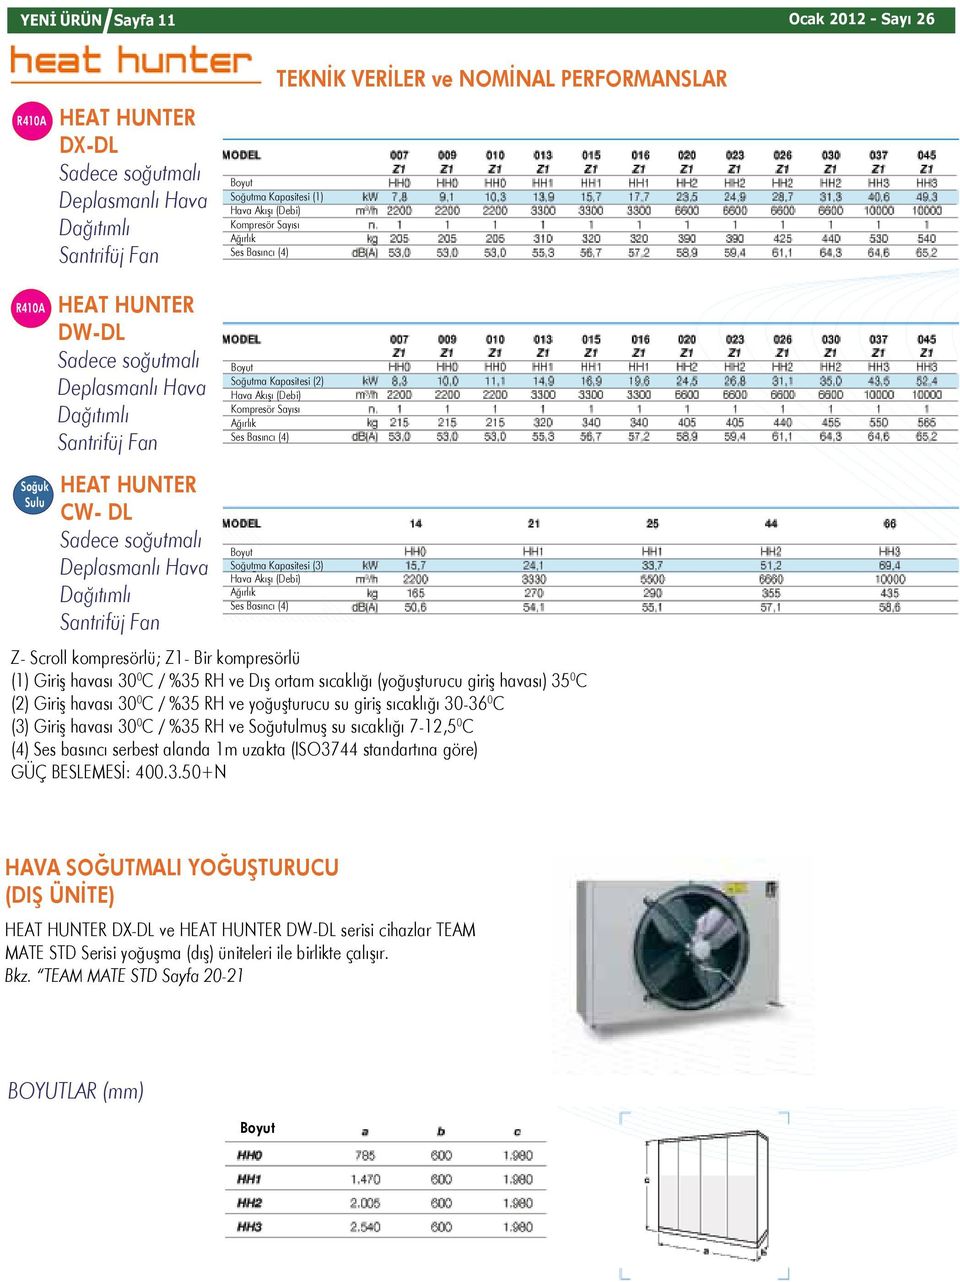 Dağıtımlı antrifüj Fan oğutma Kapasitesi (3) es Basıncı (4) Z- croll kompresörlü; Z- Bir kompresörlü () Giriş havası 30 0 C / %35 RH ve Dış ortam sıcaklığı (yoğuşturucu giriş havası) 35 0 C (2) Giriş